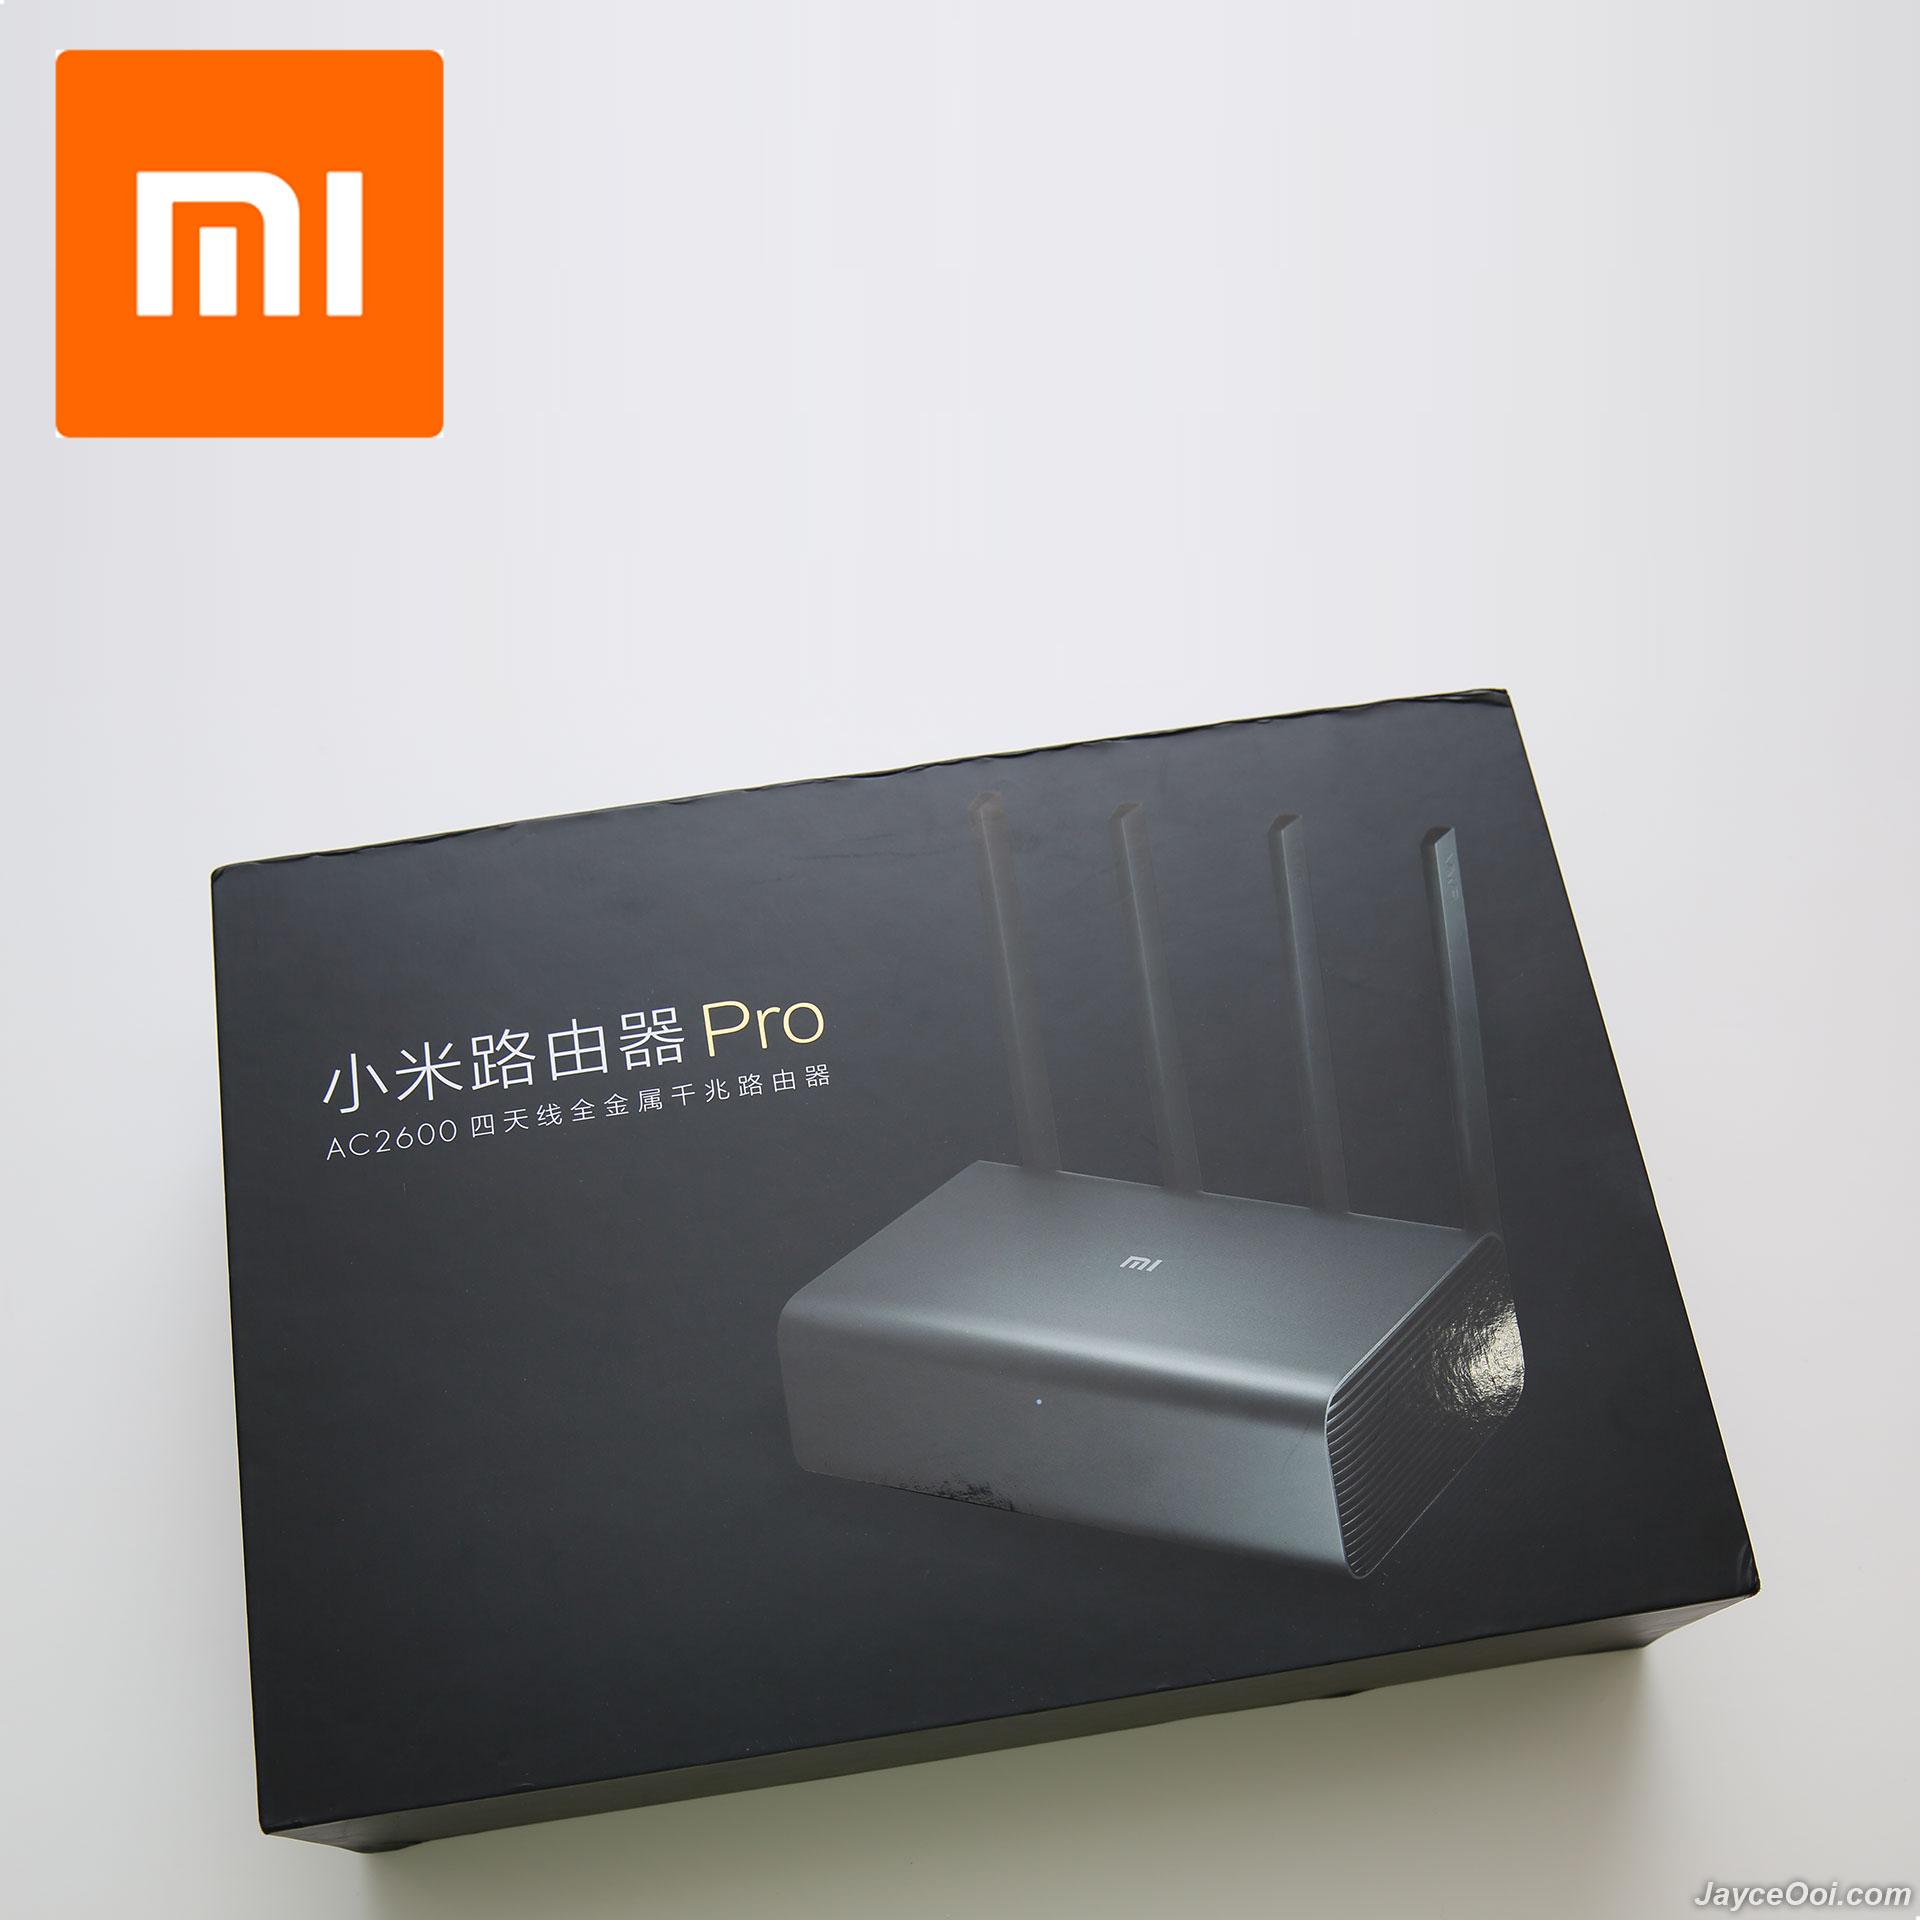 Router Wifi Xiaomi R3P Pro 4 Râu - 2 Sóng (2.4GHz & 5GHz) - Cài Sẵn Tiếng Anh